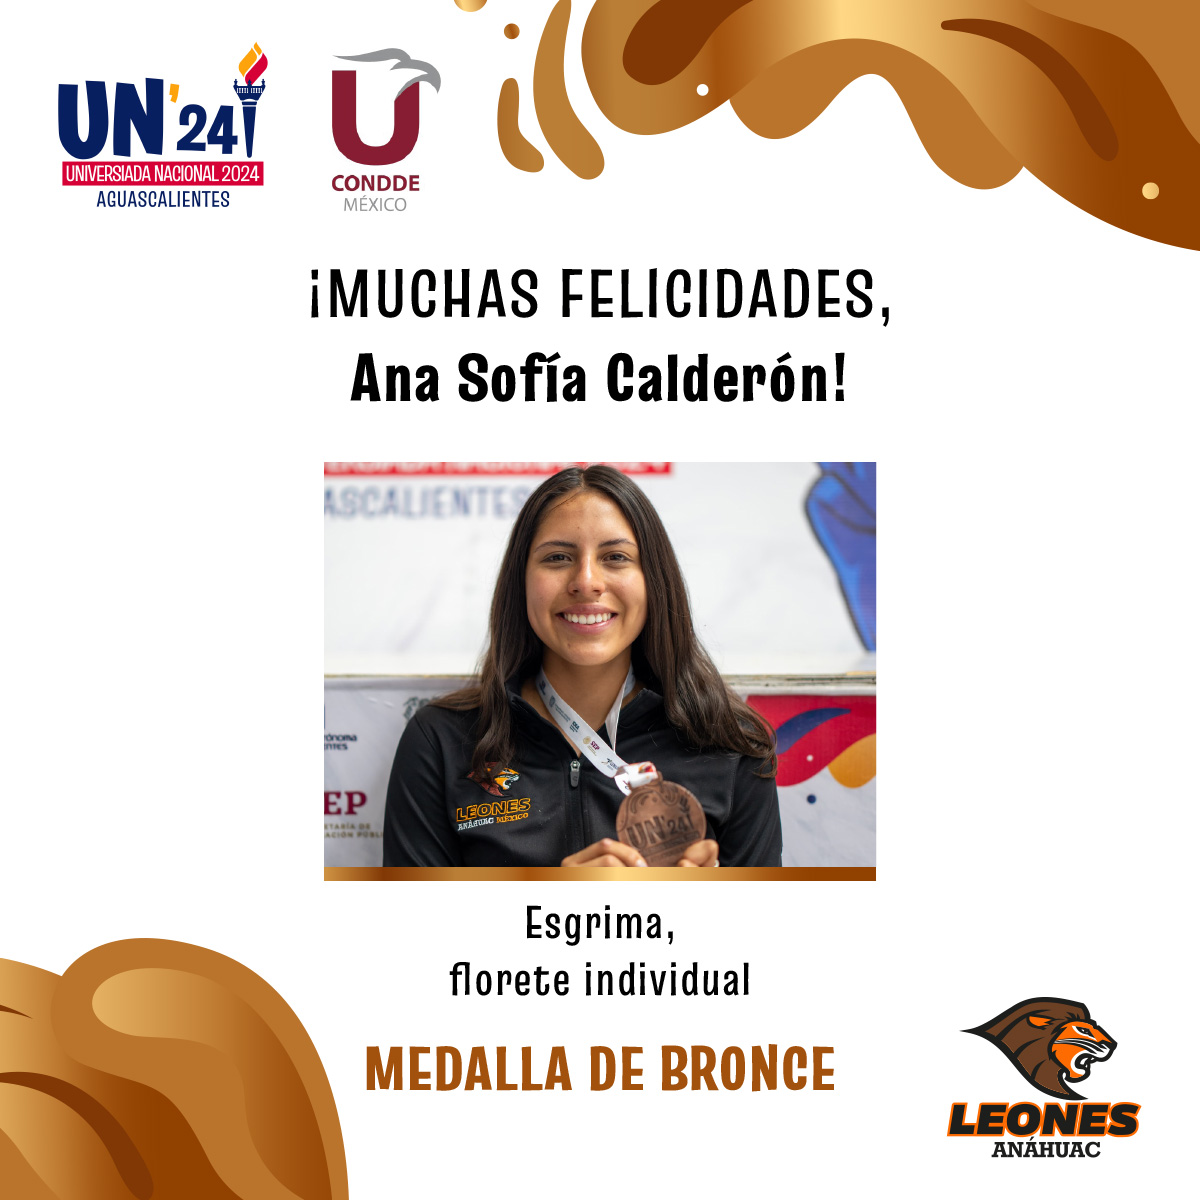 #VamosLeones Felicitamos mucho a Ana Sofía Calderón por su excelente desempeño en Esgrima, florete individual, el cual la llevó a ganarse la medalla de bronce en la #UniversiadaNacional2024 🤺 ¡Muchas felicidades! 🥈🙌🏼 @ConddeMx @UniversiadaMX